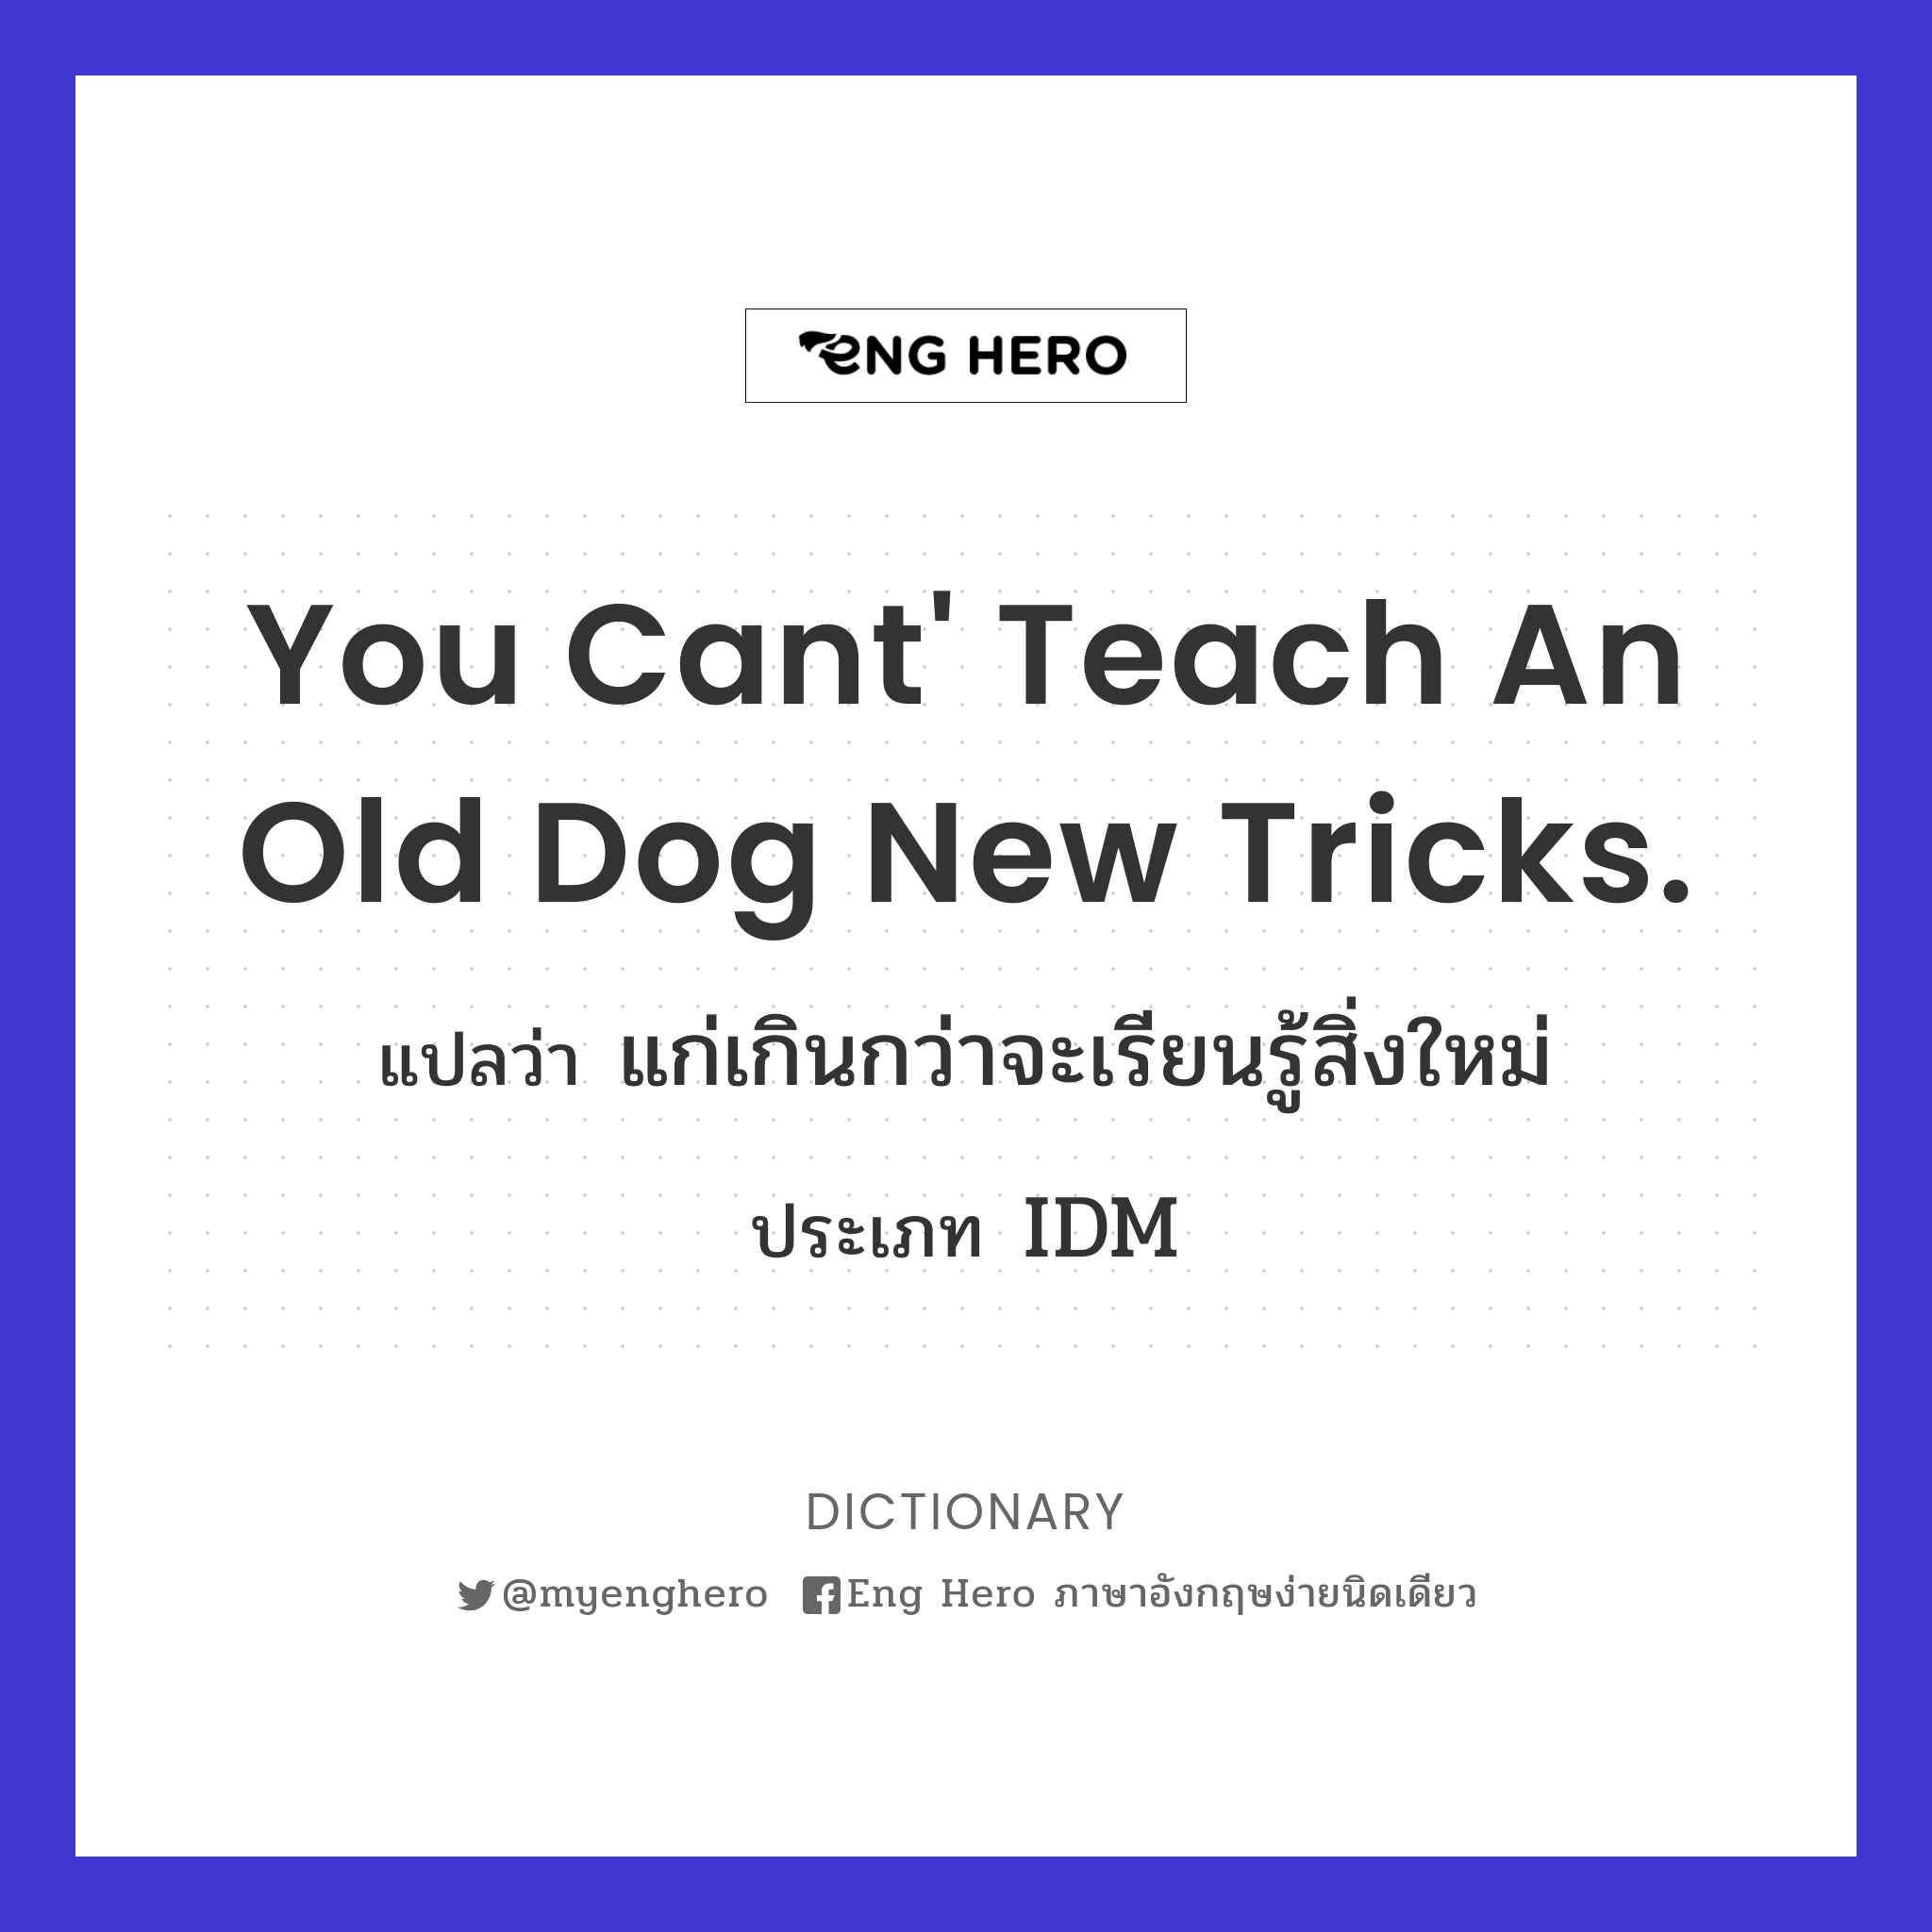 You cant' teach an old dog new tricks.